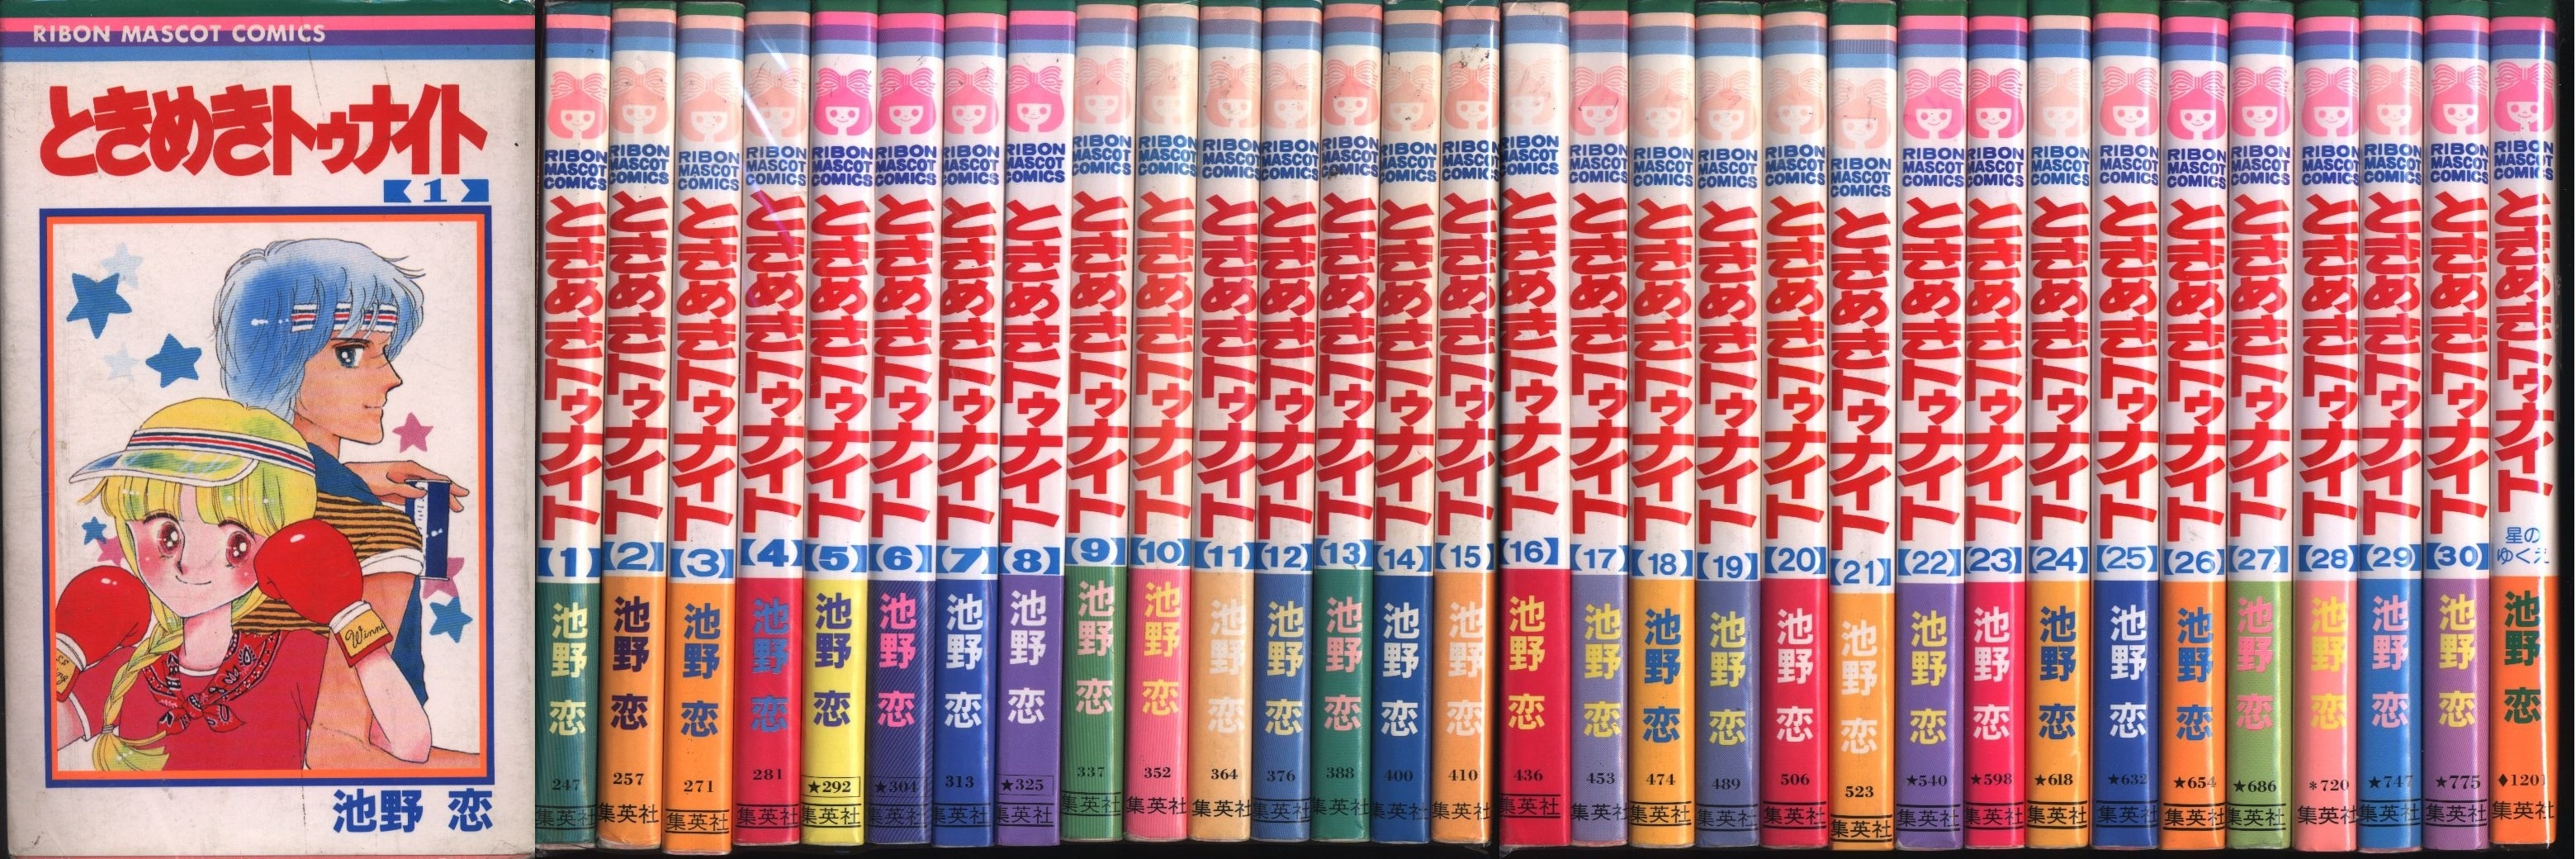 集英社 りぼんマスコットコミックス 池野恋 ときめきトゥナイト 全30巻 セット まんだらけ Mandarake